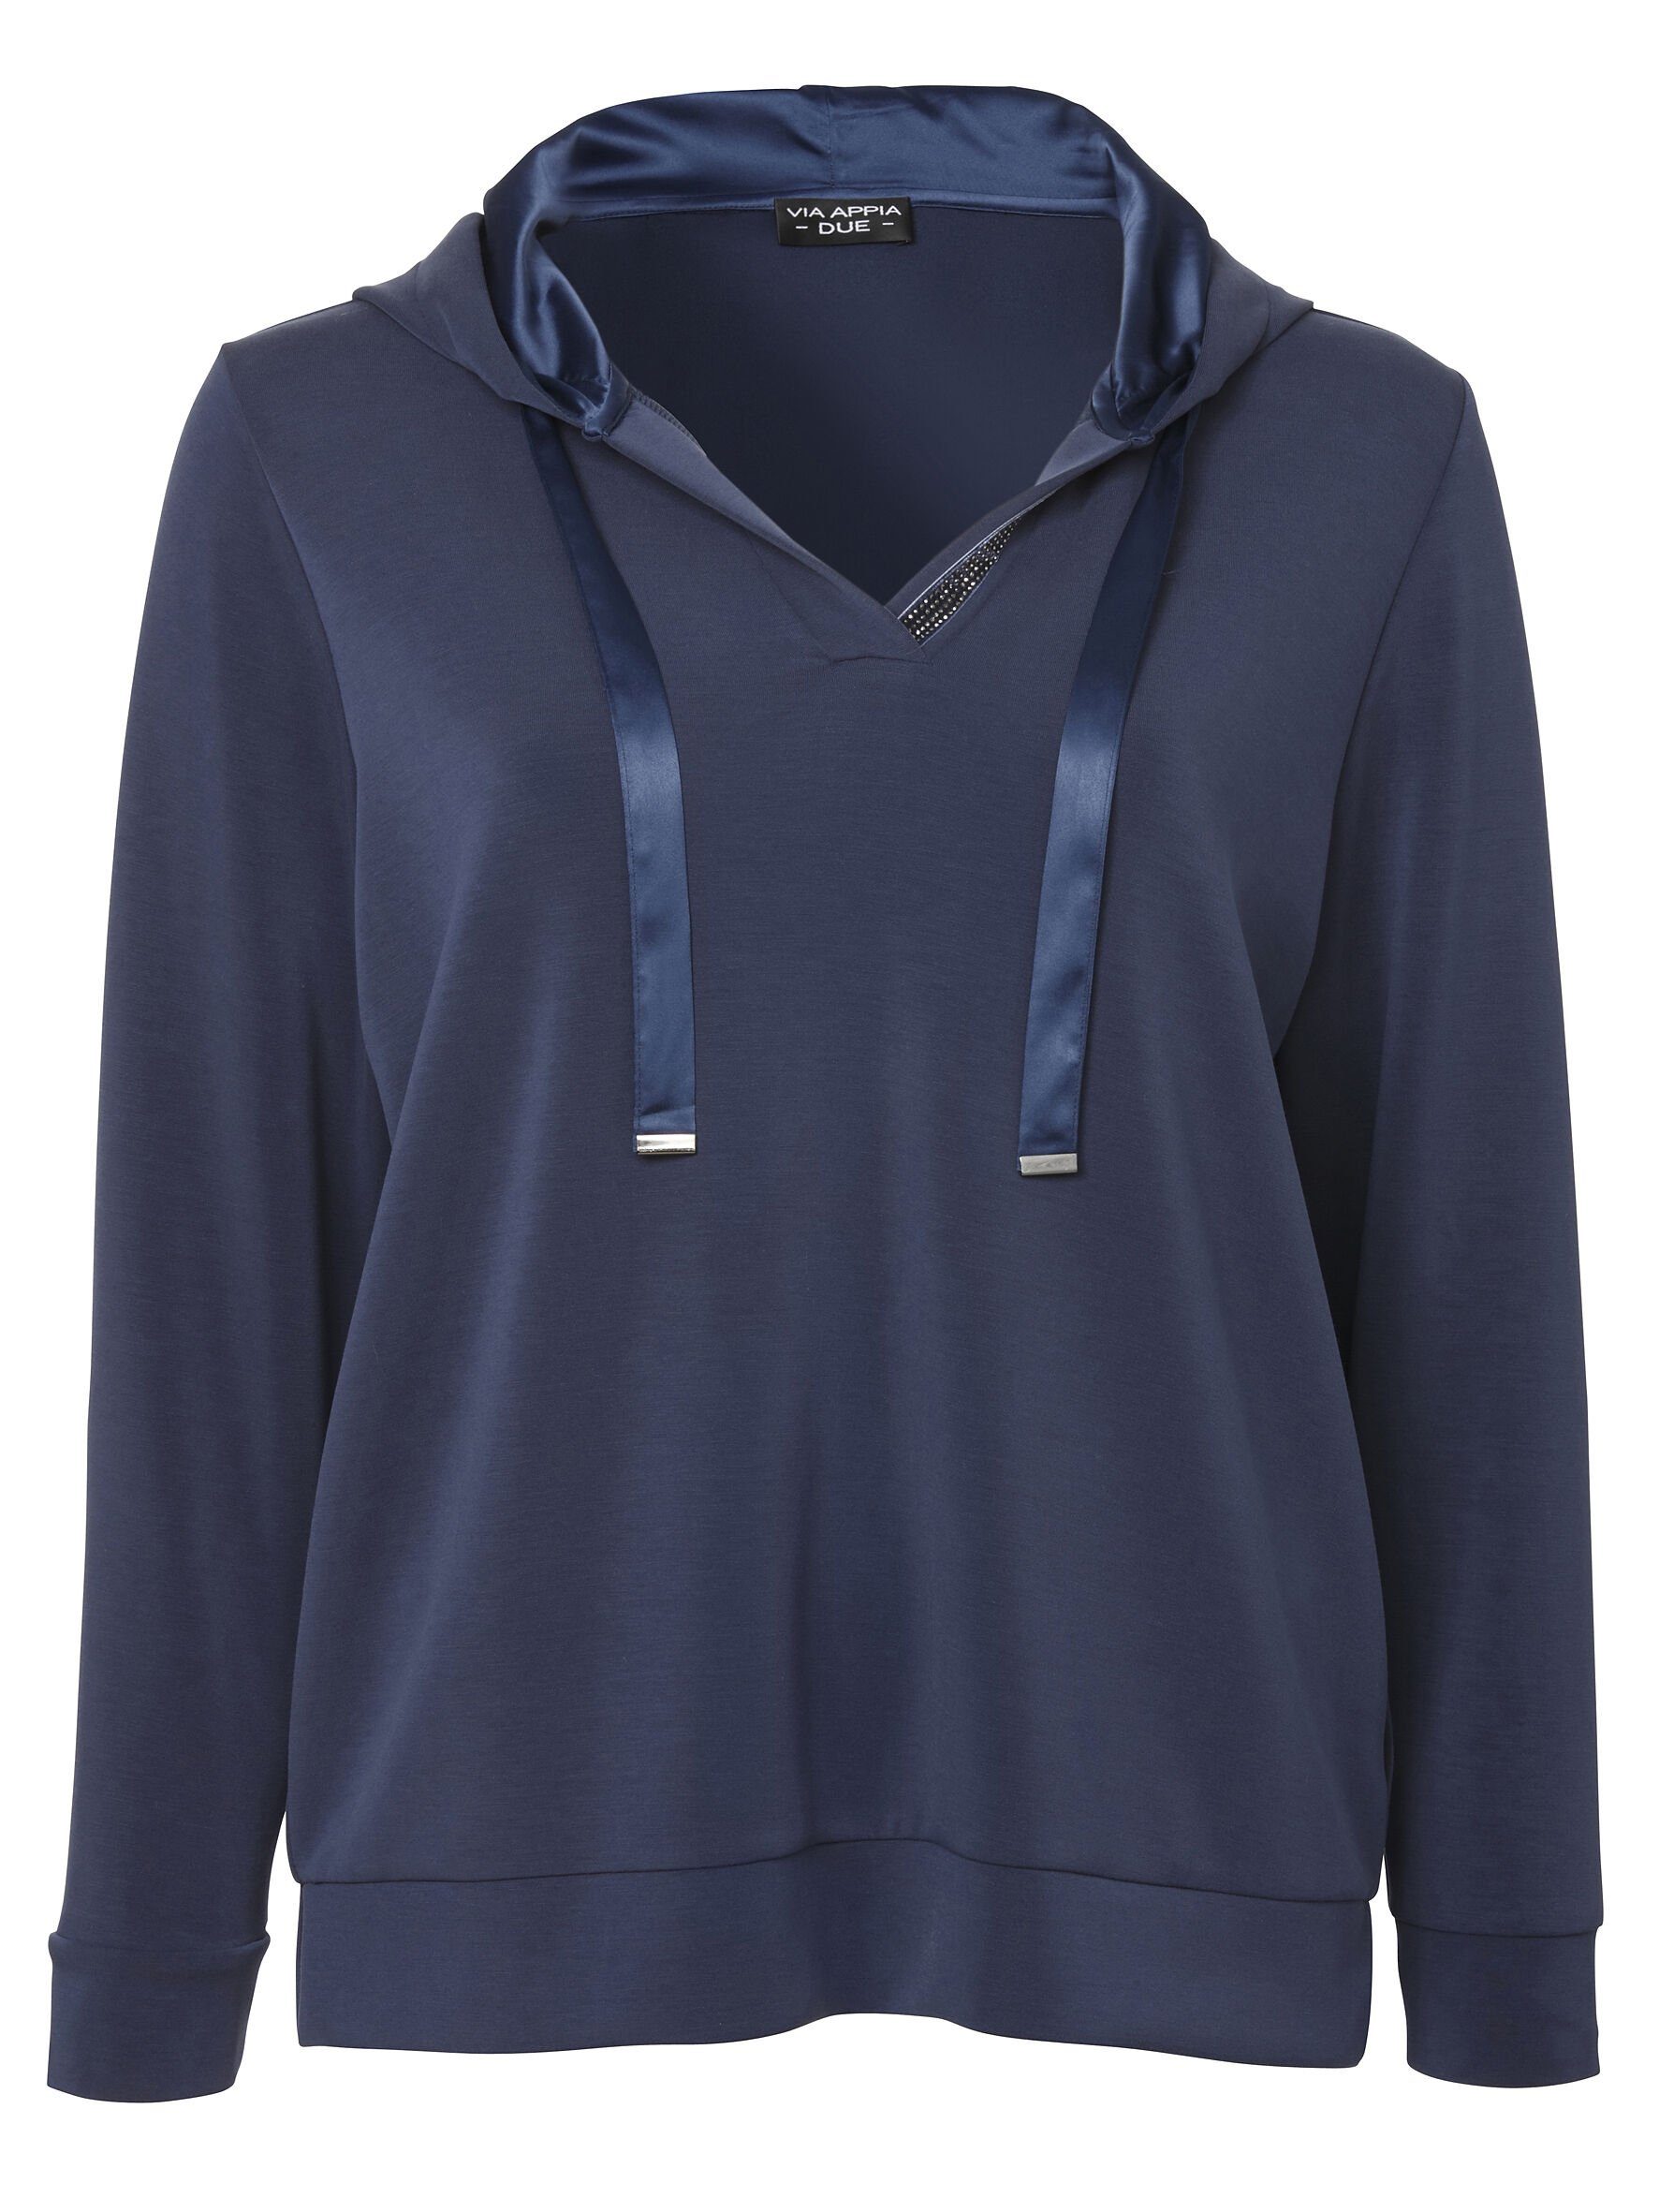 indigo DUE Sportives Sweatshirt hochwertigen unifarbenem Viskosemischung Sweatshirt APPIA VIA in Stil mit